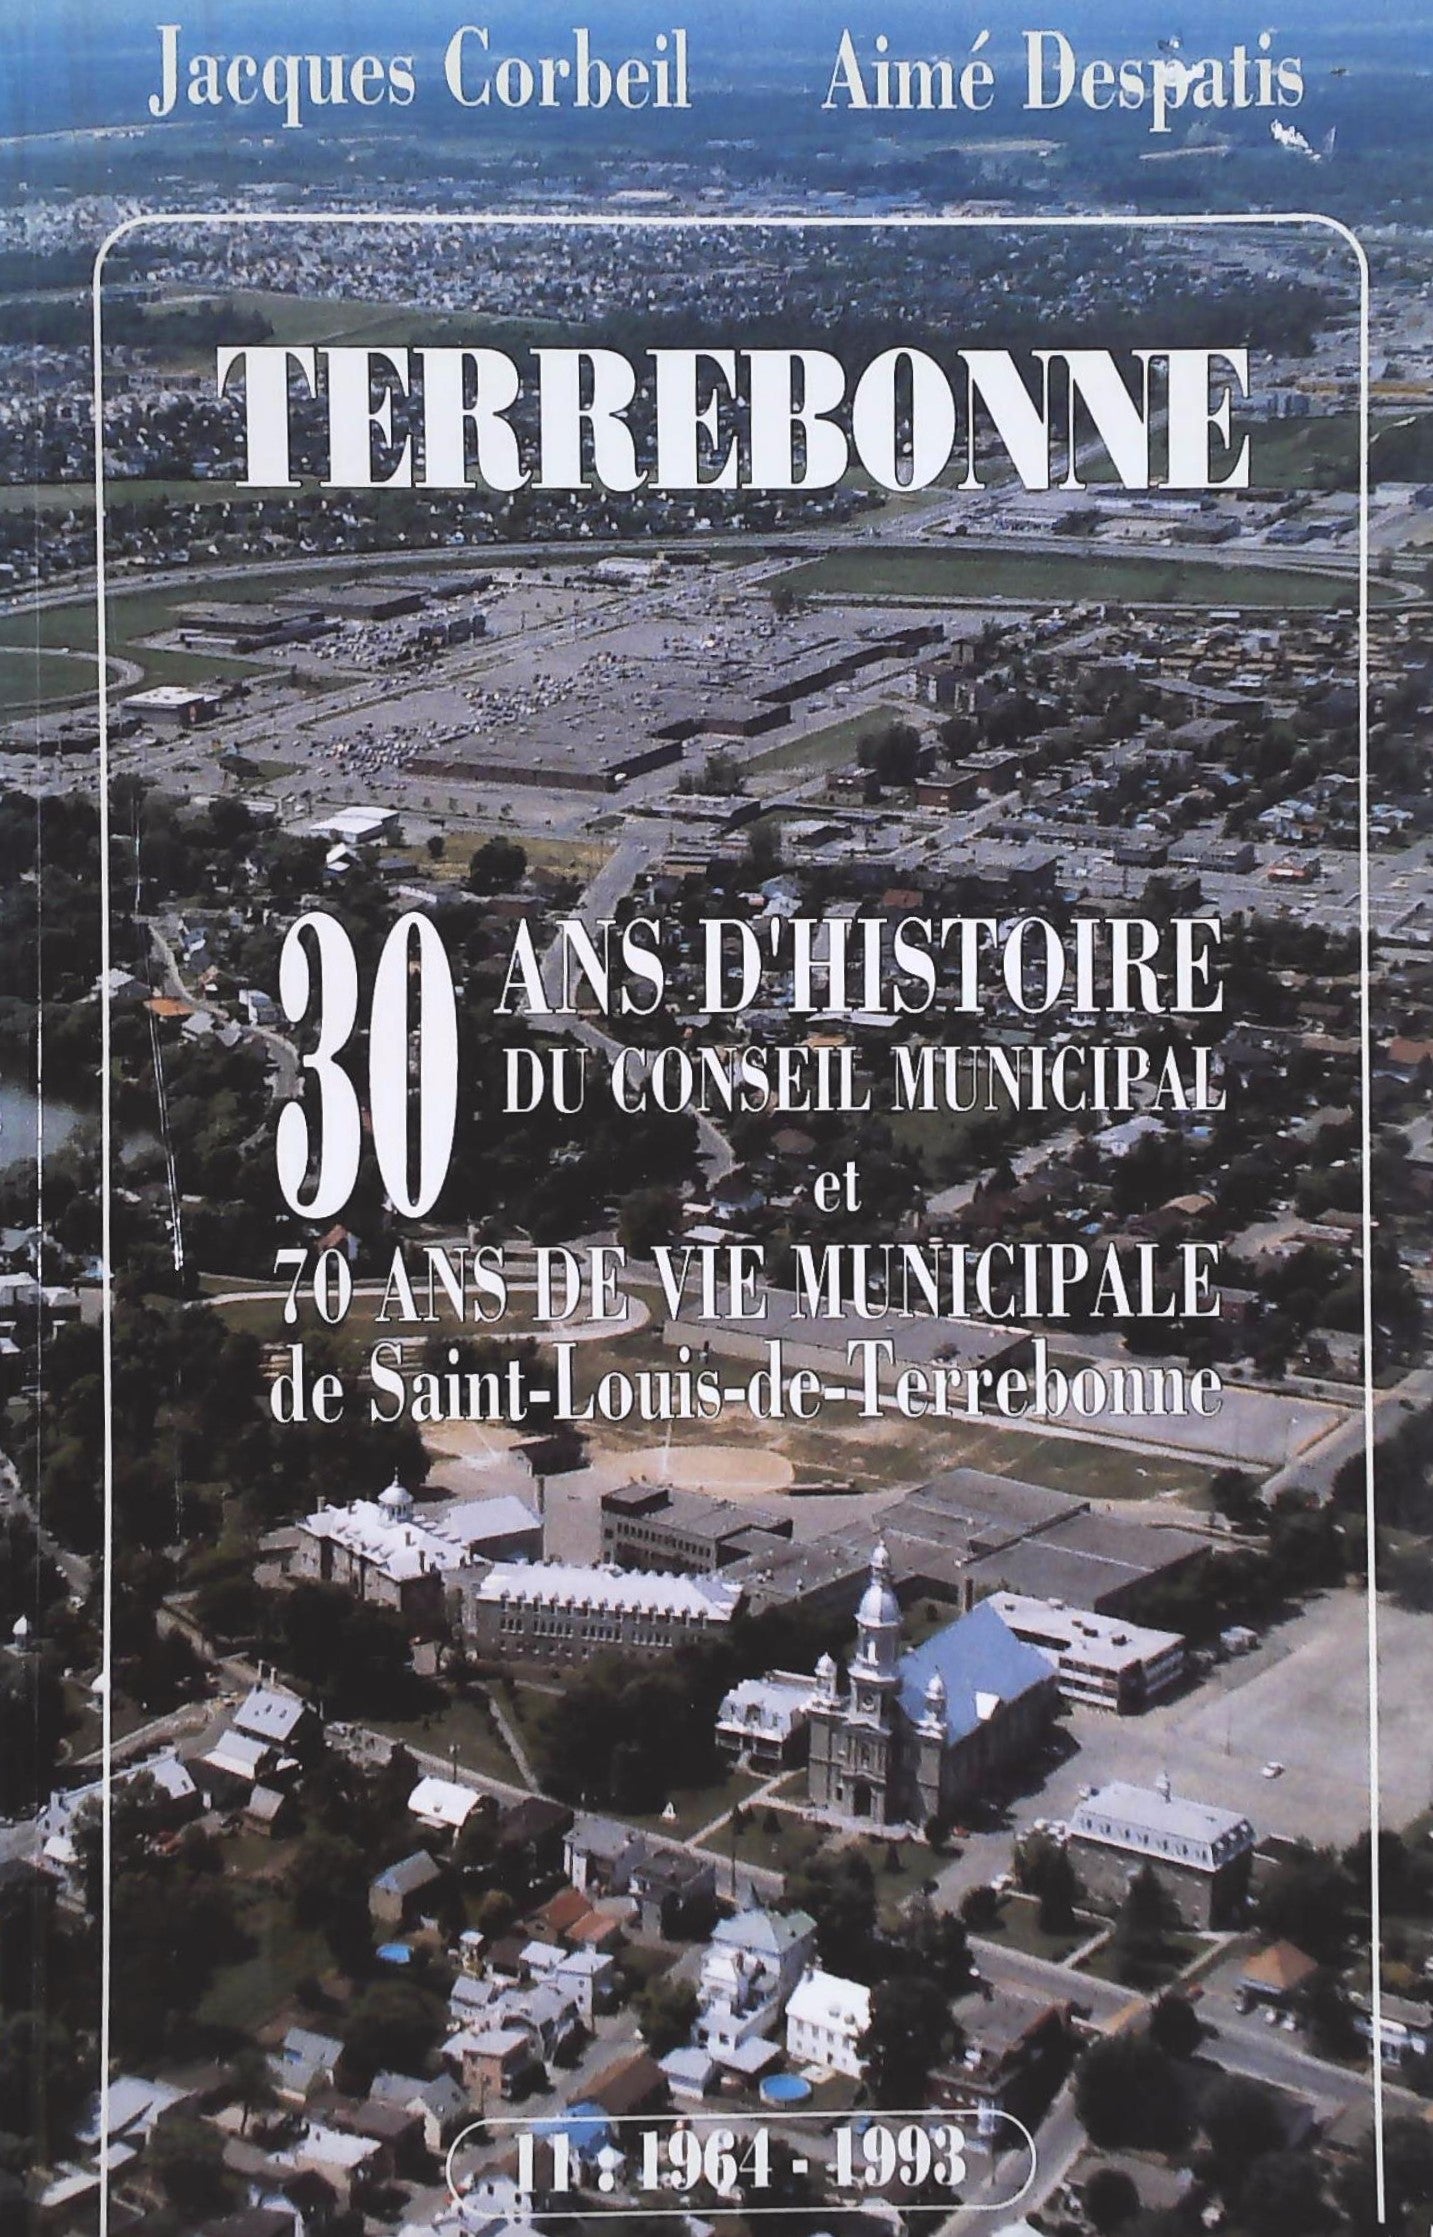 Livre ISBN 2980234509 Terrebonne : 30 ans d'histoire du conseil municipal et 70 ans de vie municipale de Saint-Louis-de-Terrebonne (Jacques Corbeil)